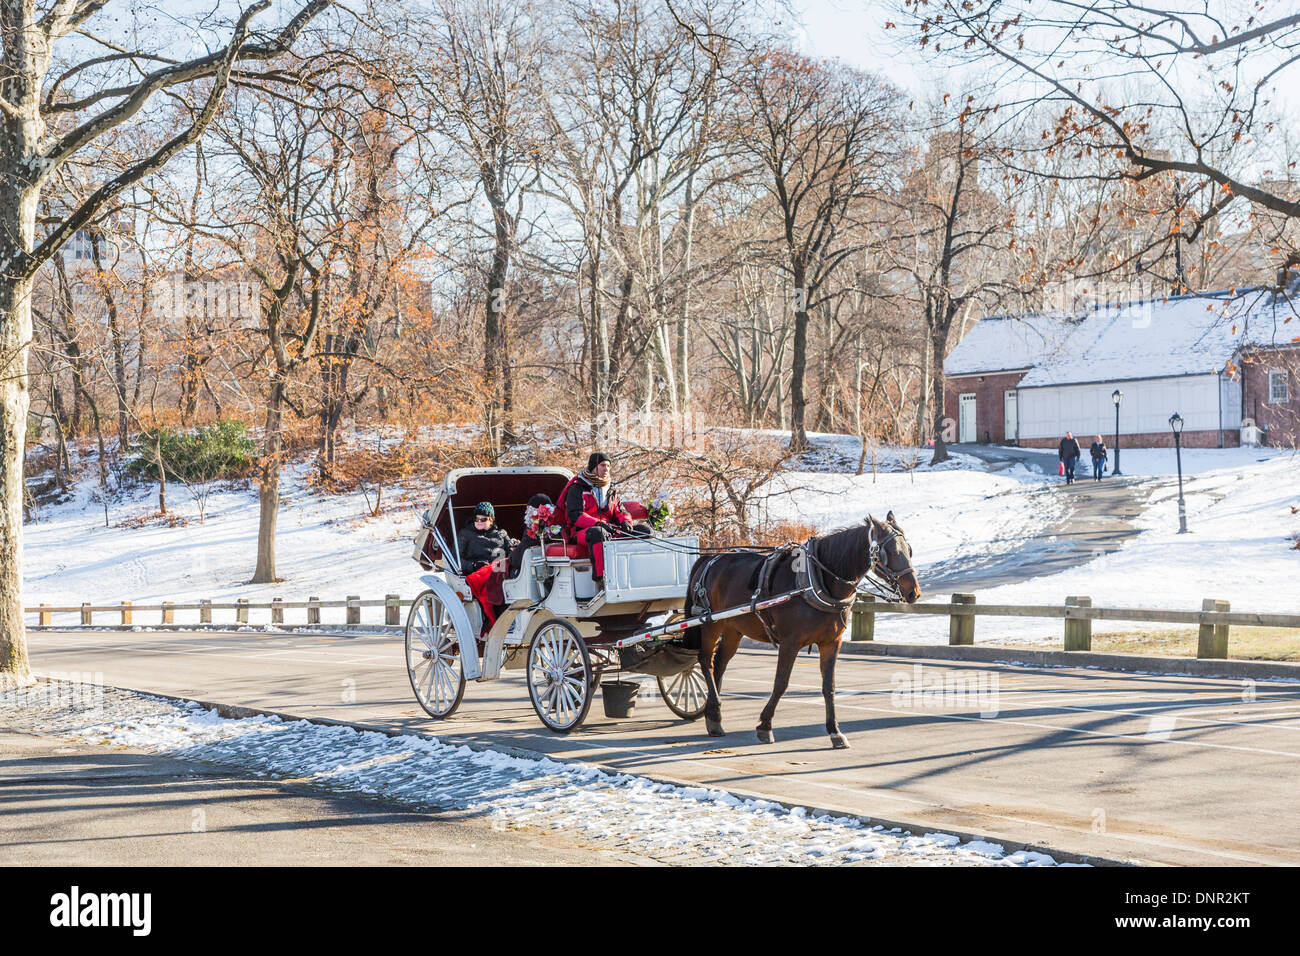 Il turista a godere di un tradizionale cavallo e carrozza nella neve in inverno a Central Park di New York, Stati Uniti d'America Foto Stock